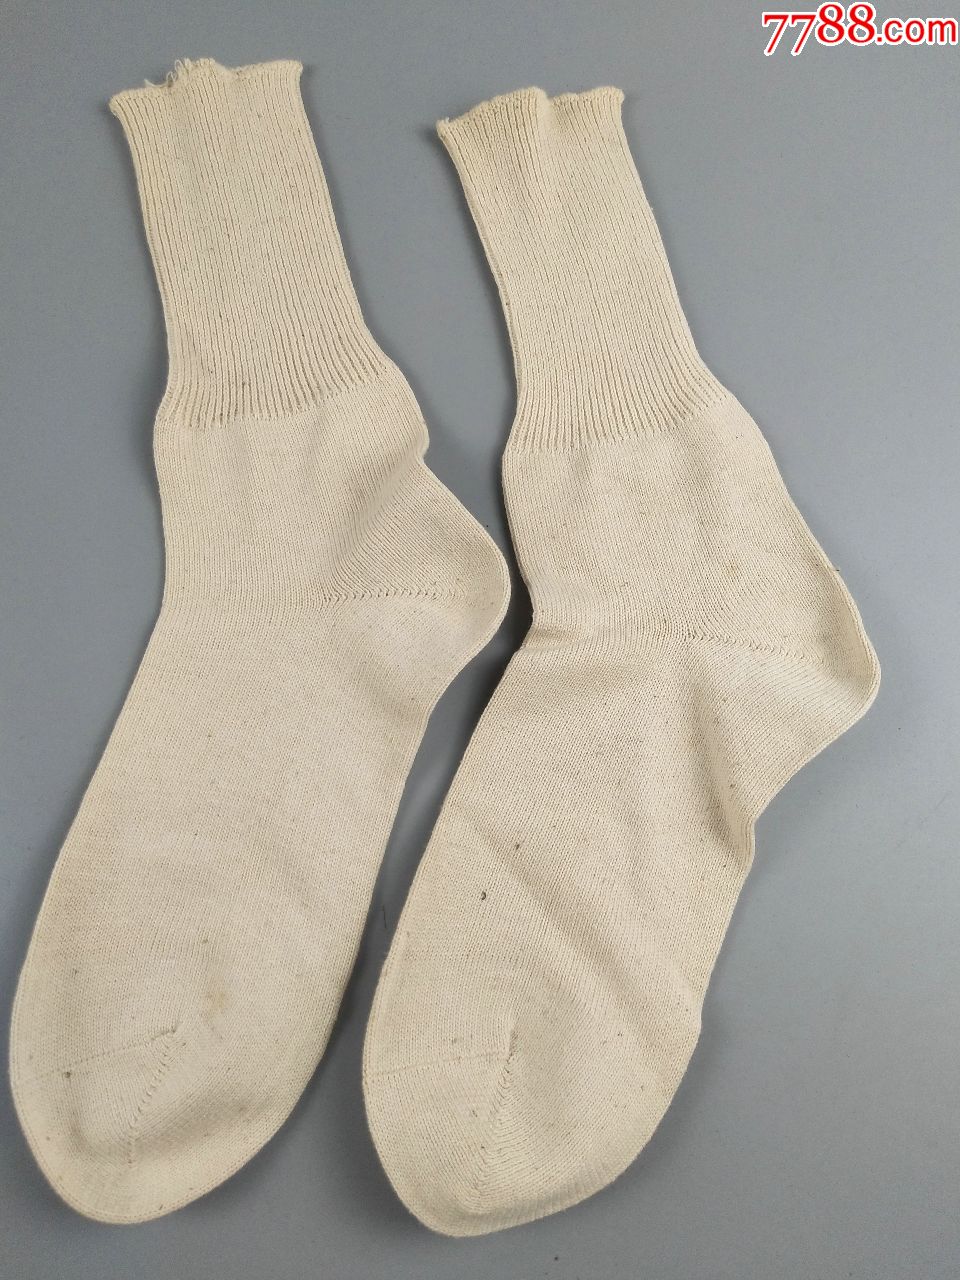 海军棉线袜子